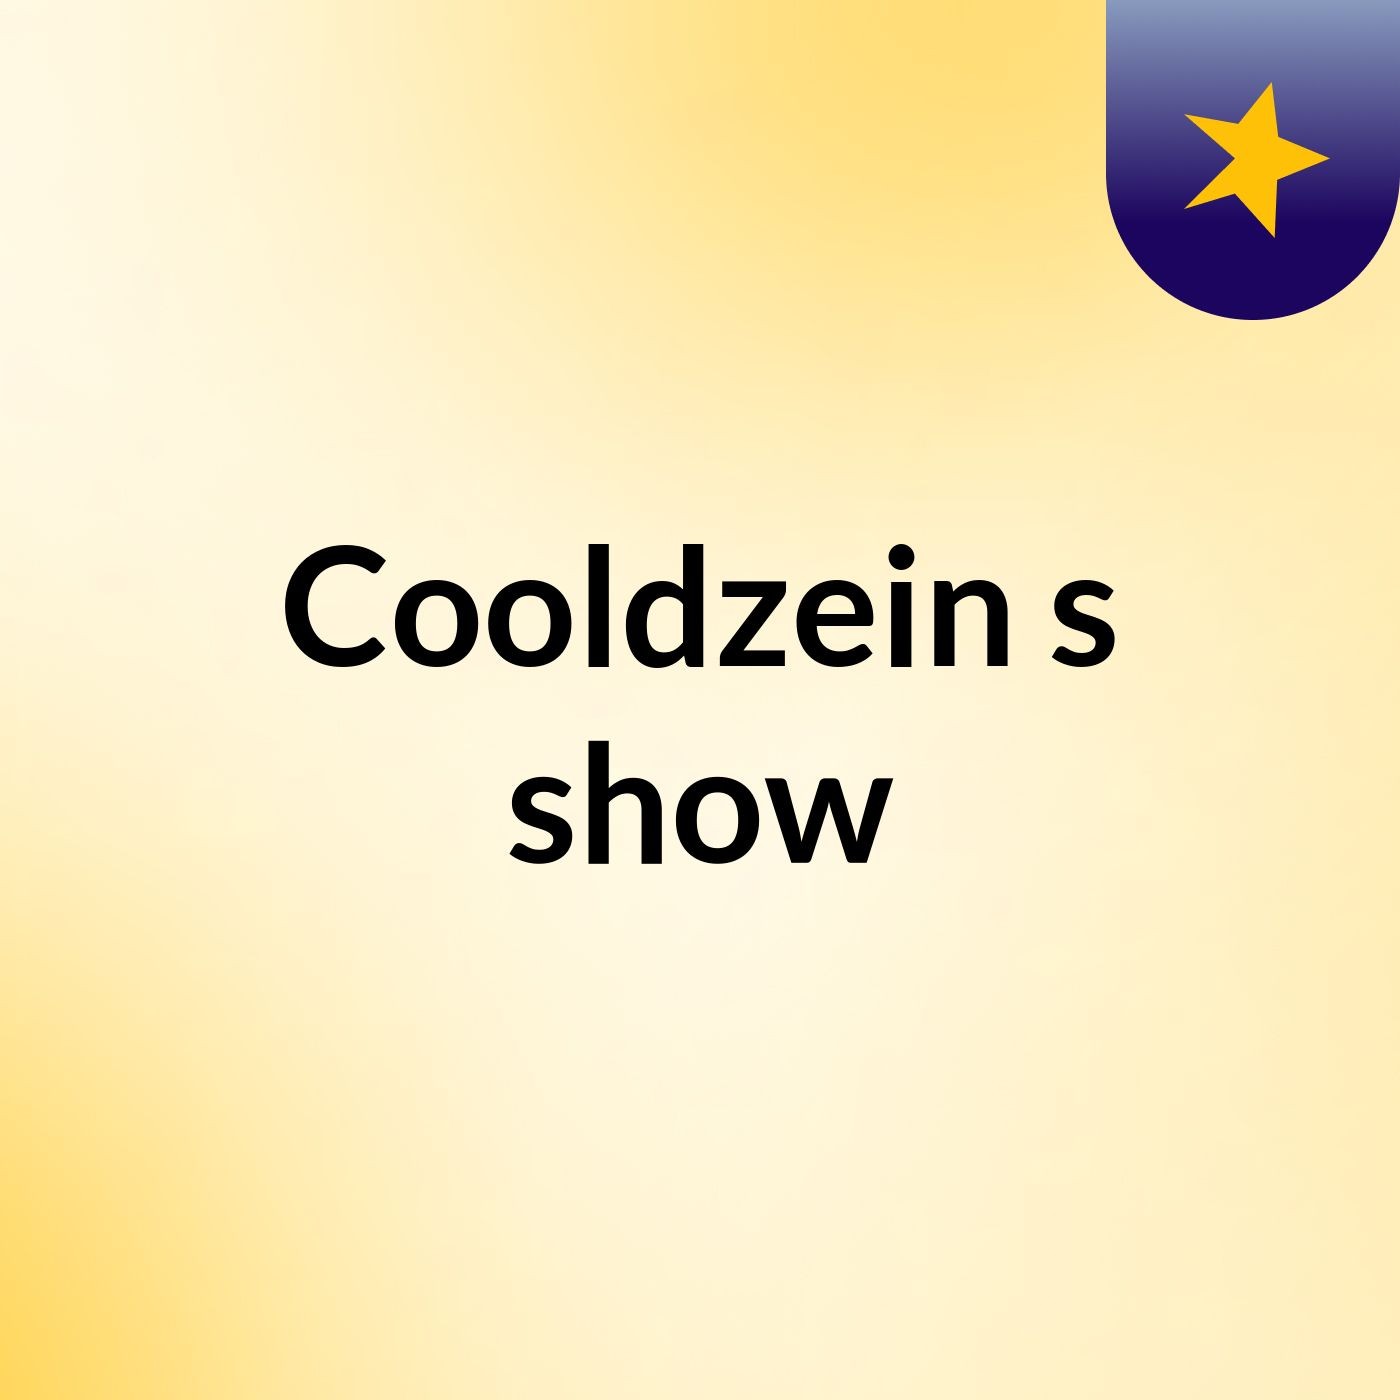 Cooldzein's show